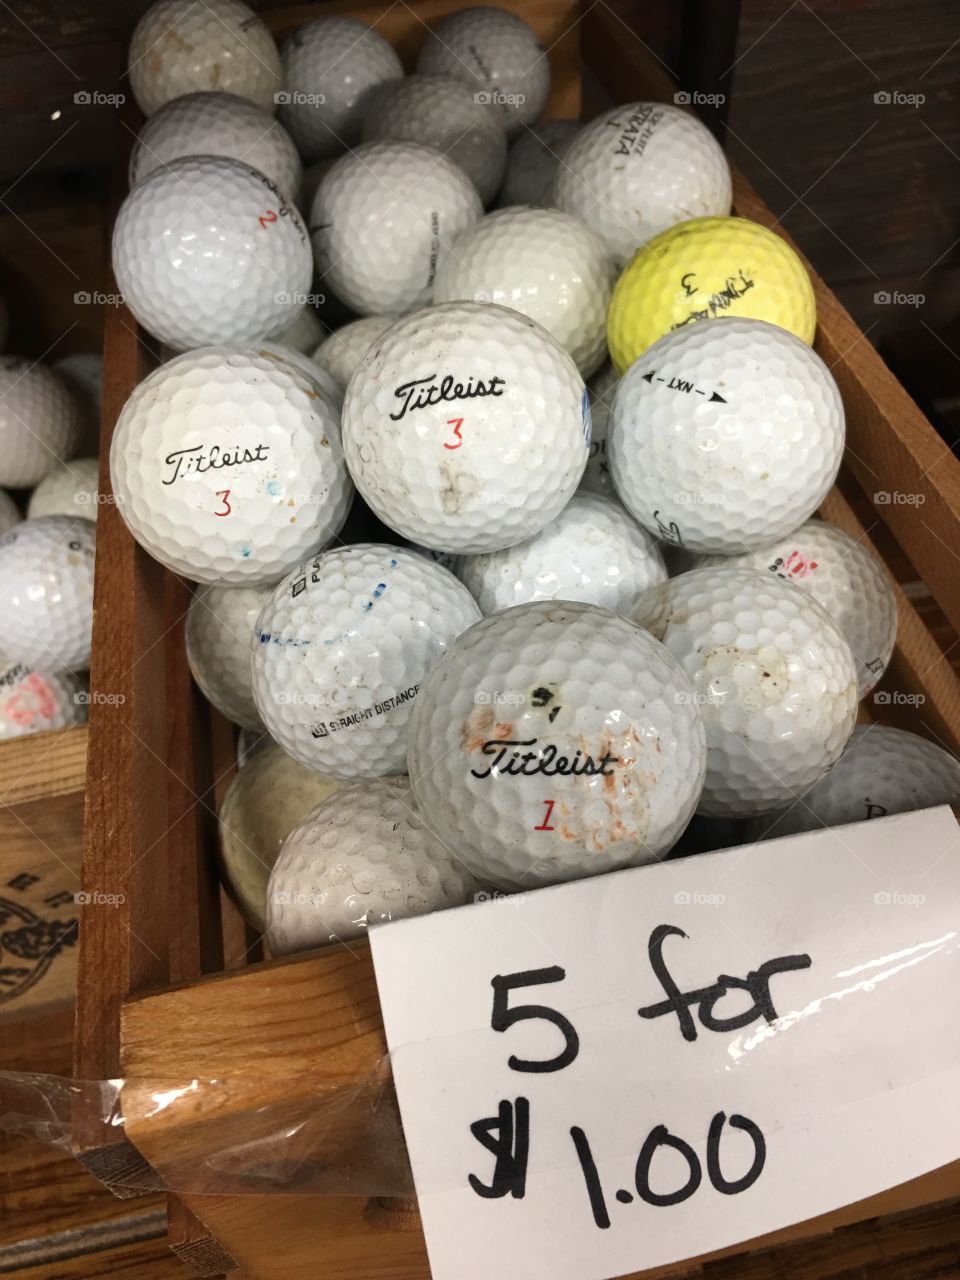 Thrift shop golf balls!